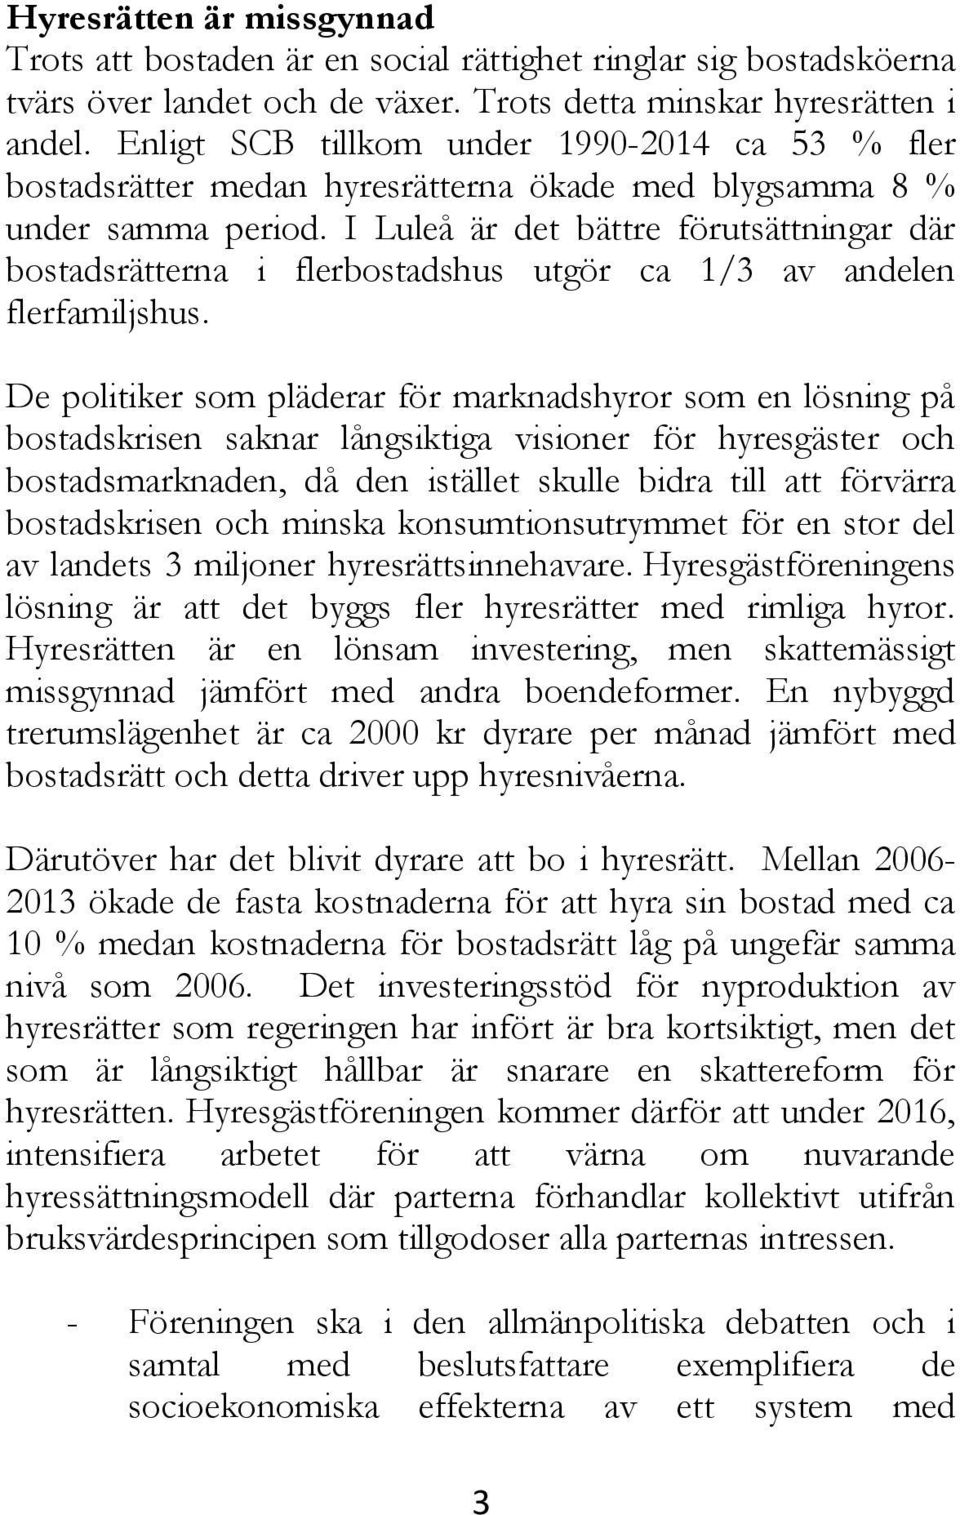 I Luleå är det bättre förutsättningar där bostadsrätterna i flerbostadshus utgör ca 1/3 av andelen flerfamiljshus.